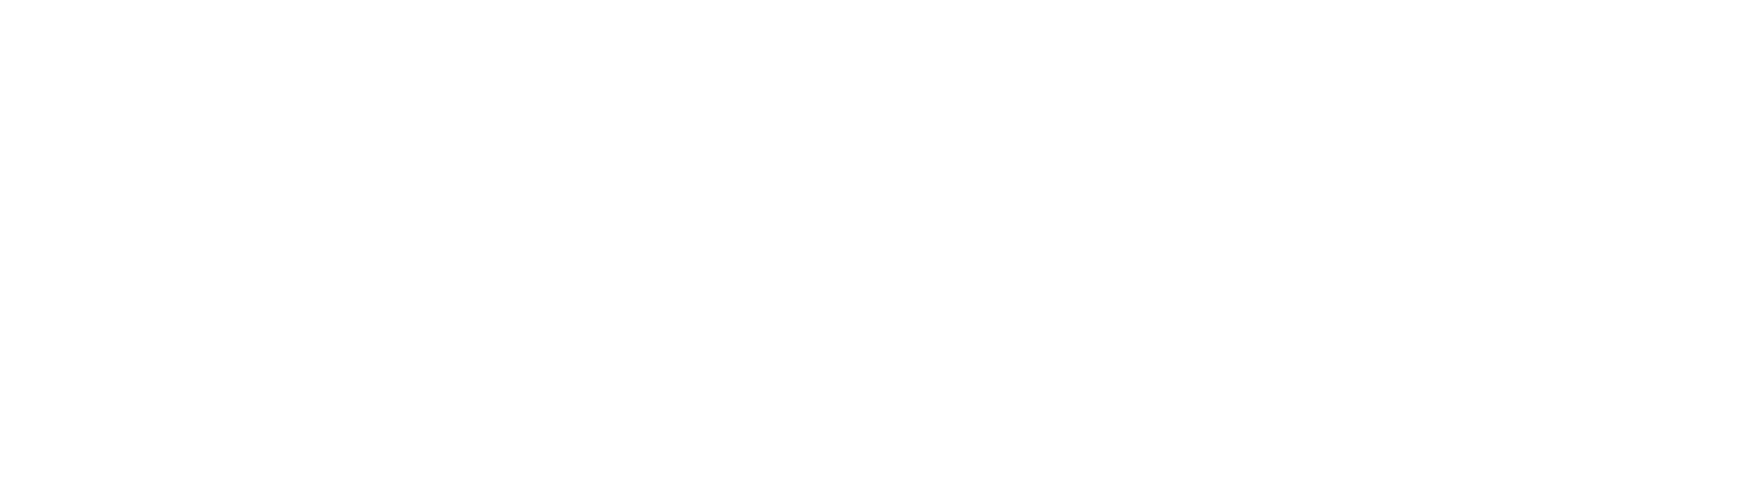 Pure